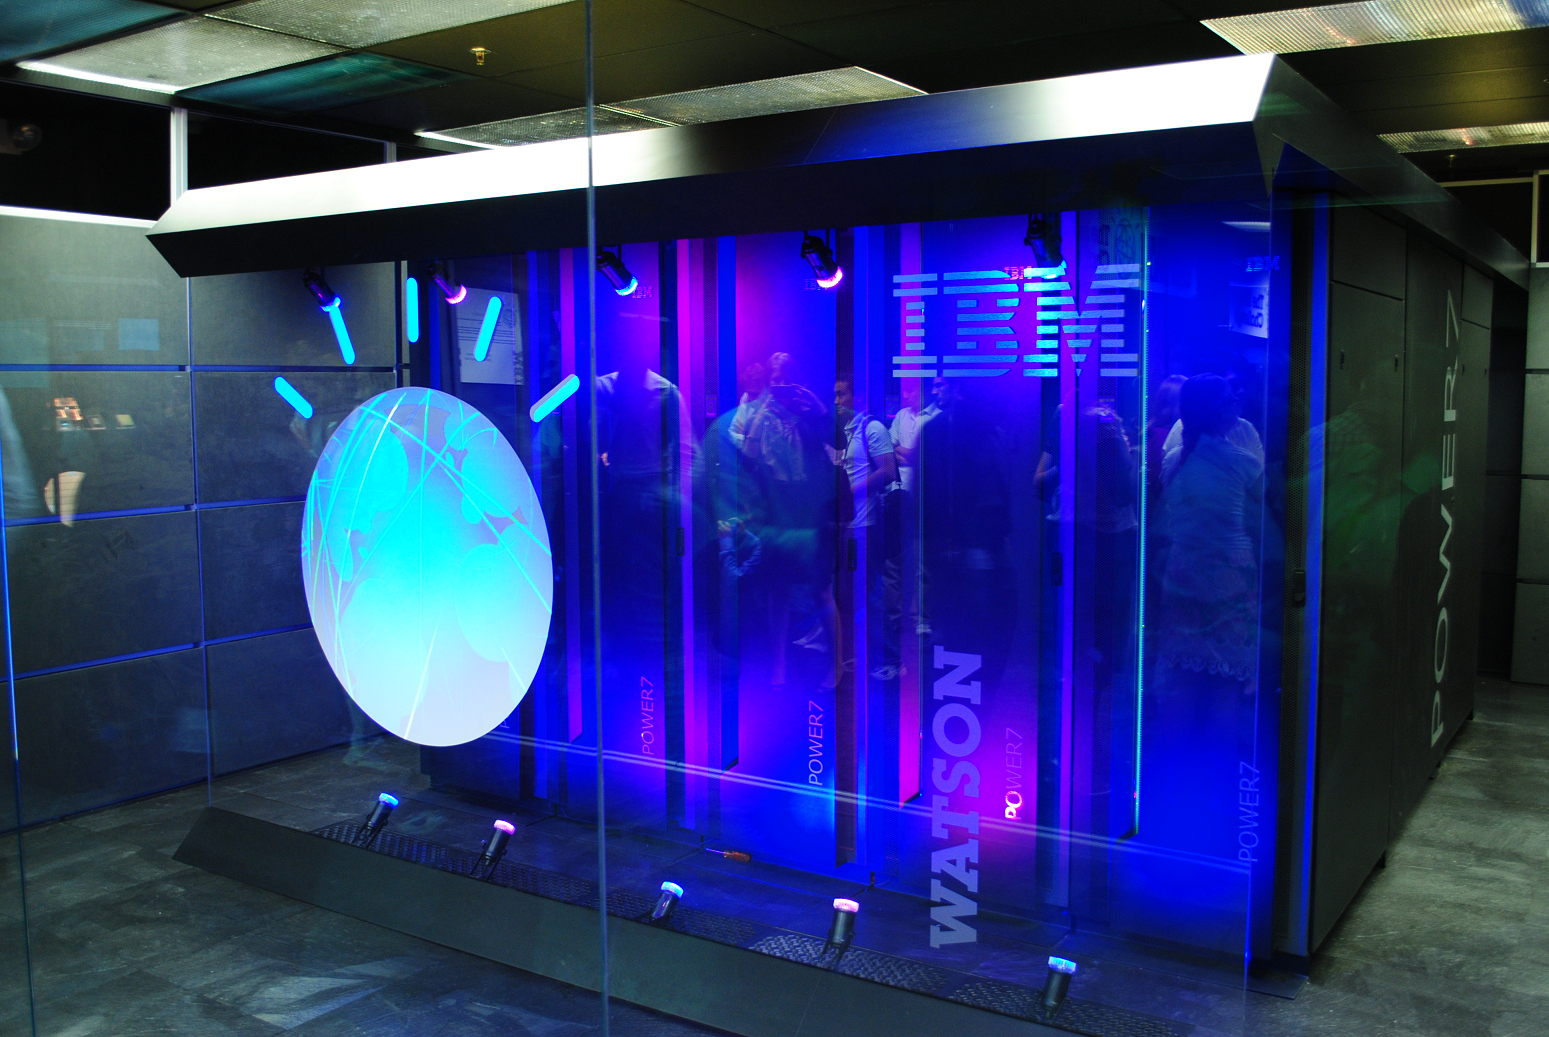 IBM Watson. Photo: Wikicommons